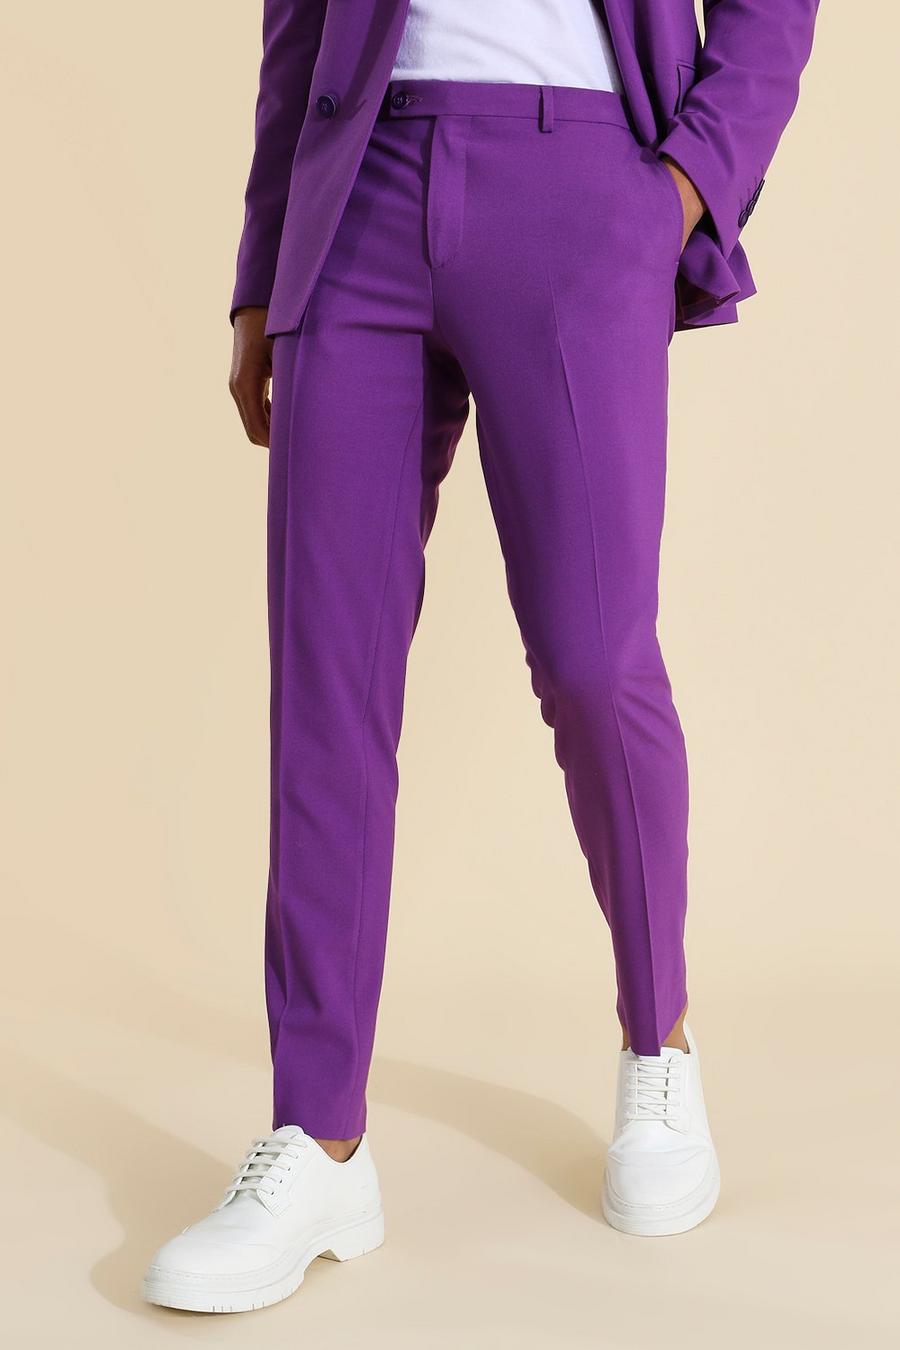 מכנסי חליפה סקיני בצבע סגול